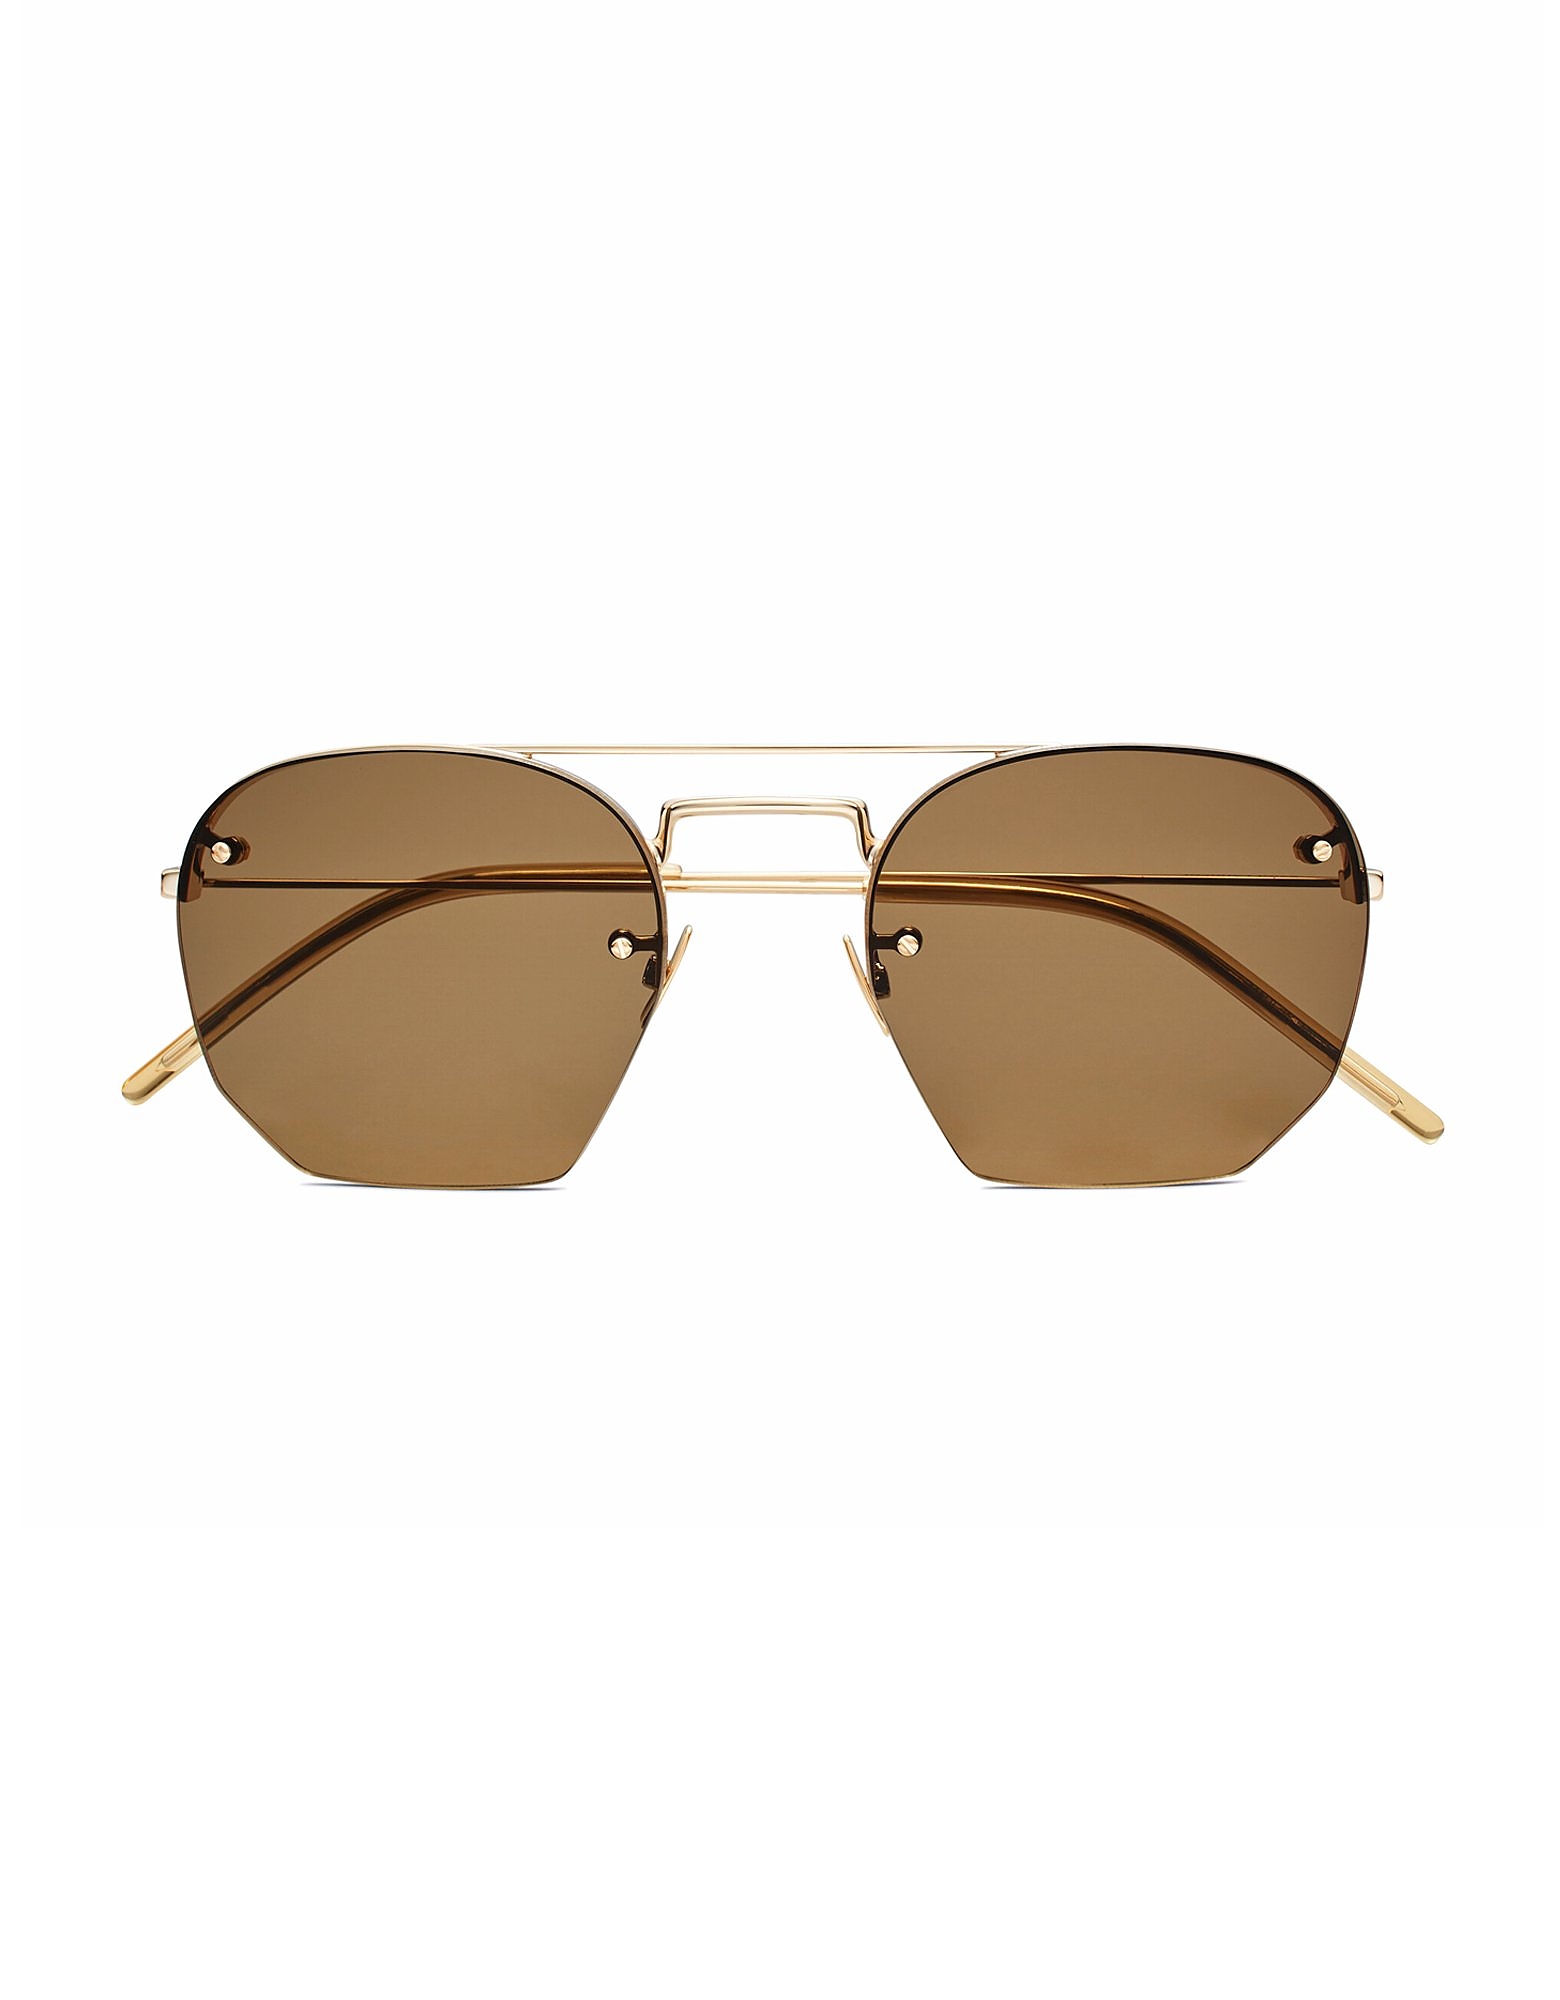 Saint Laurent Sunglasses Metal Double Bridge Frame Men's Sunglasses